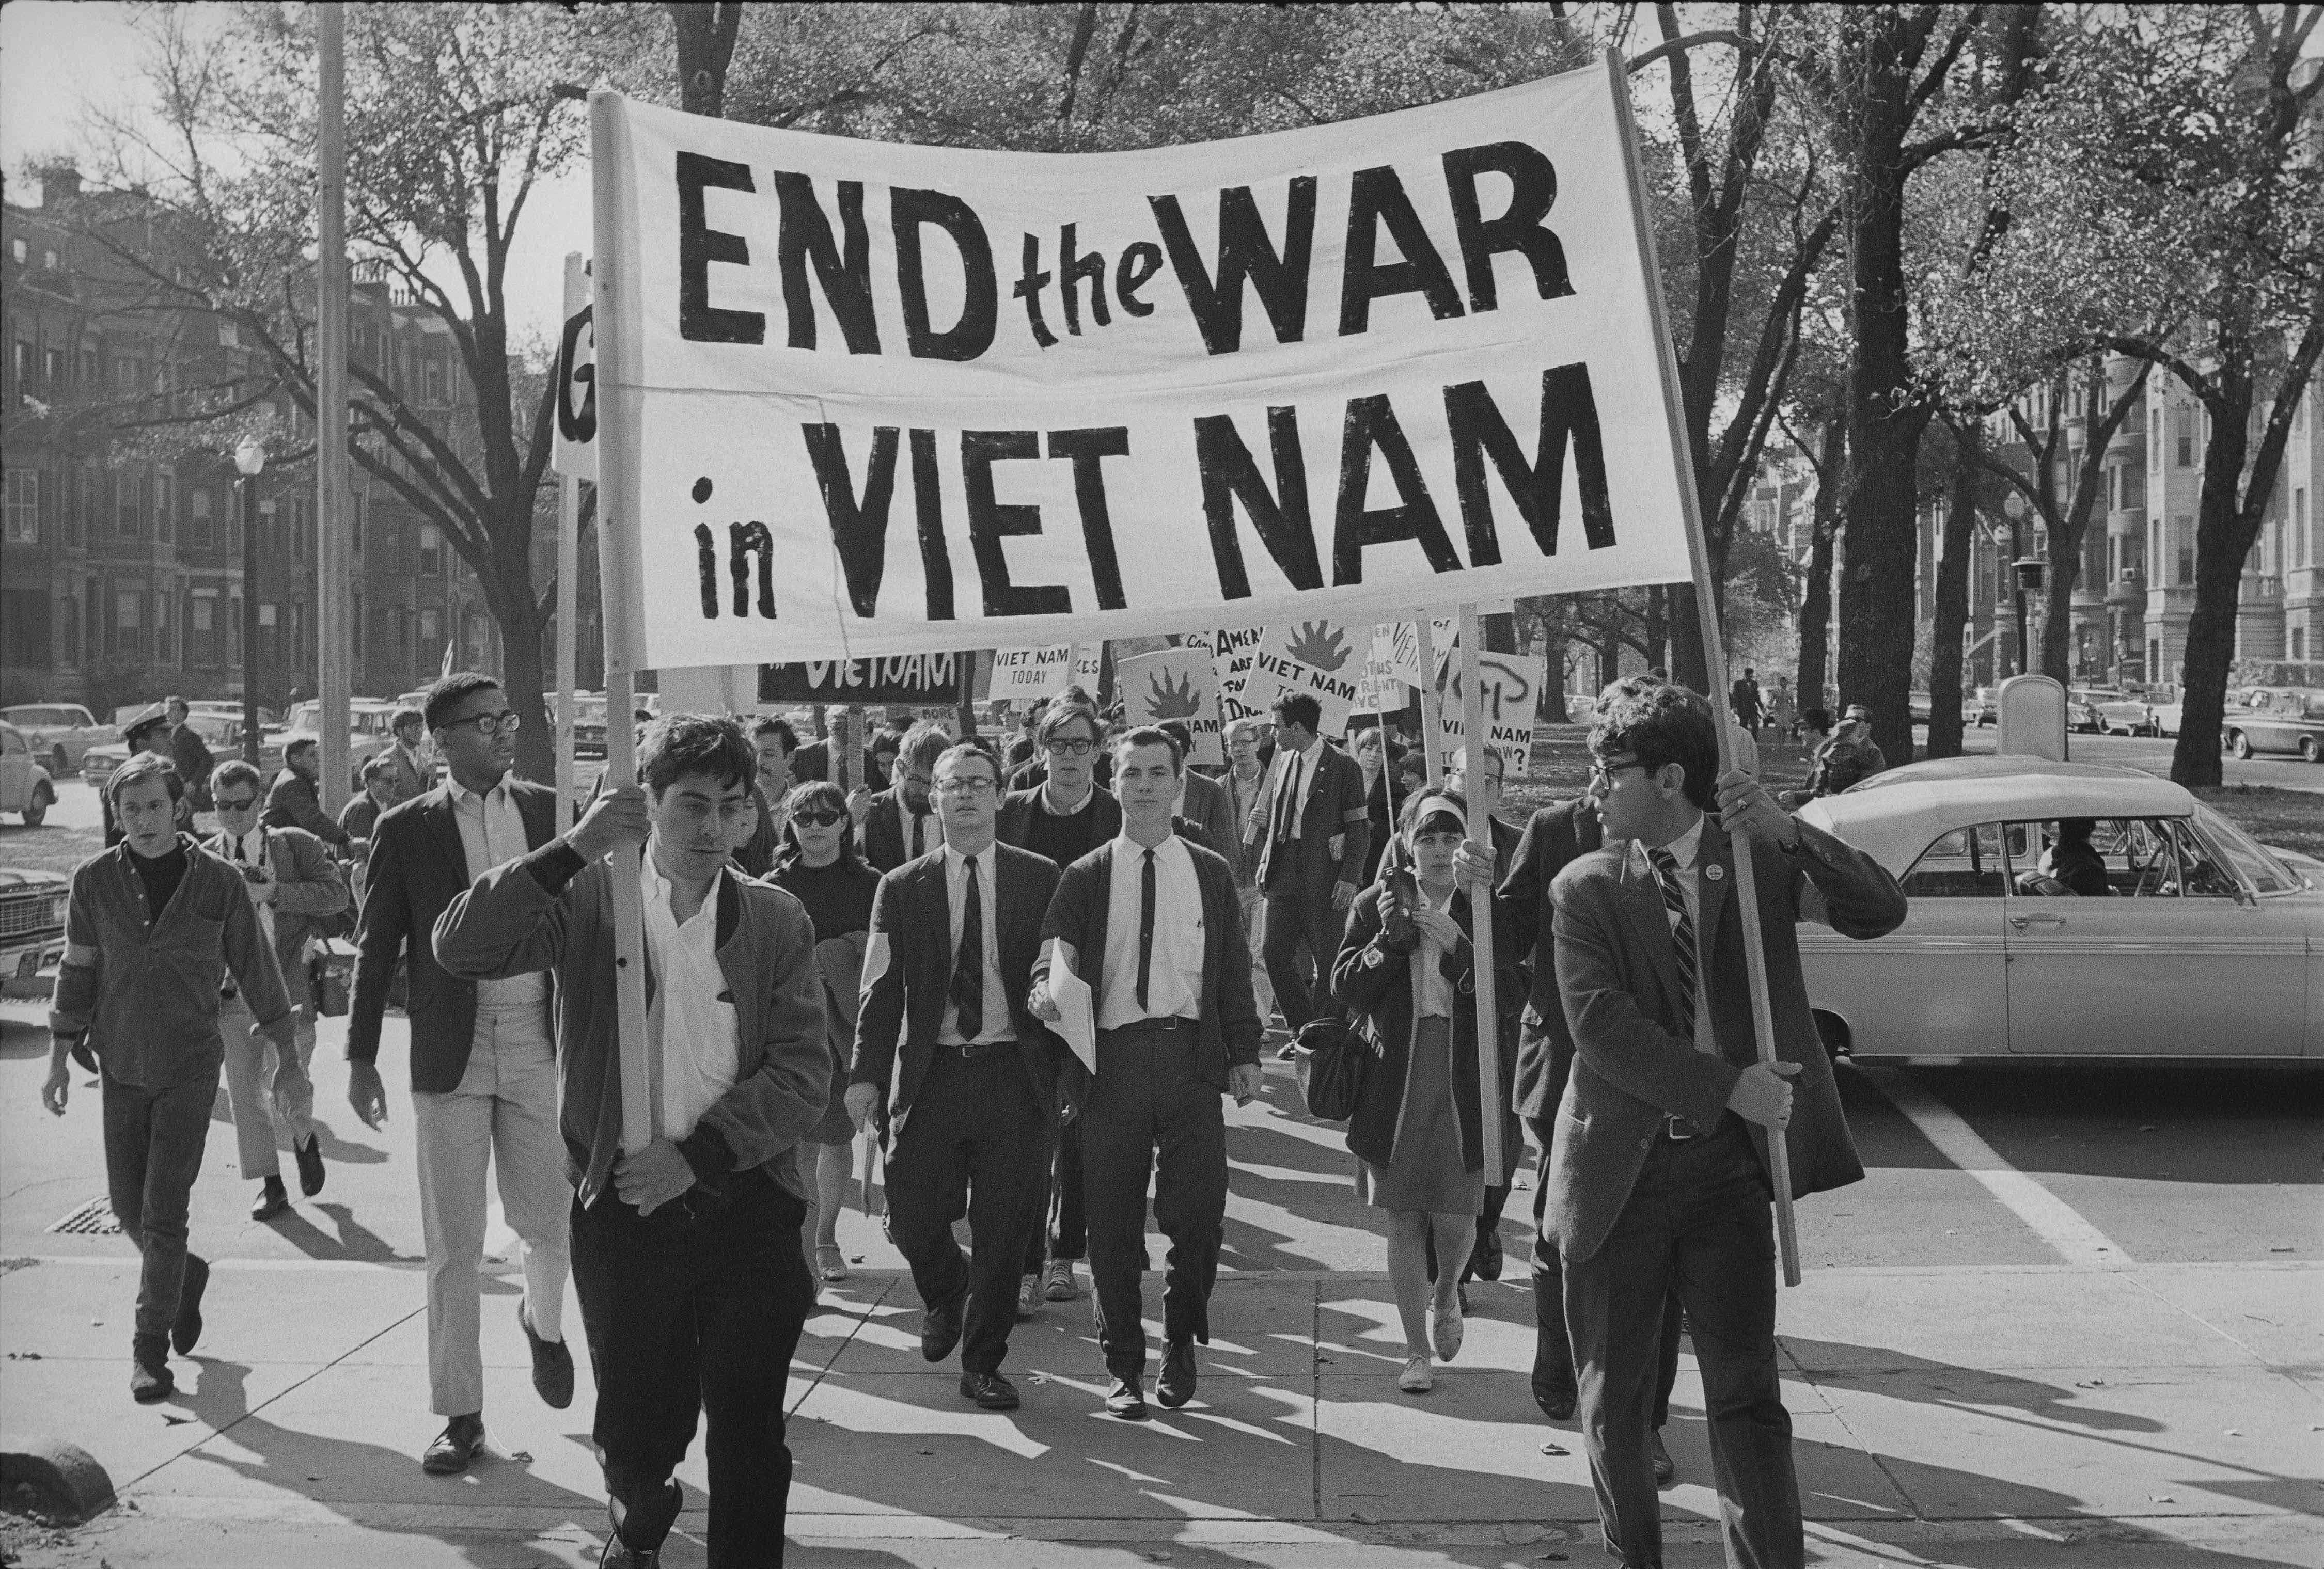 The Viet Nam War